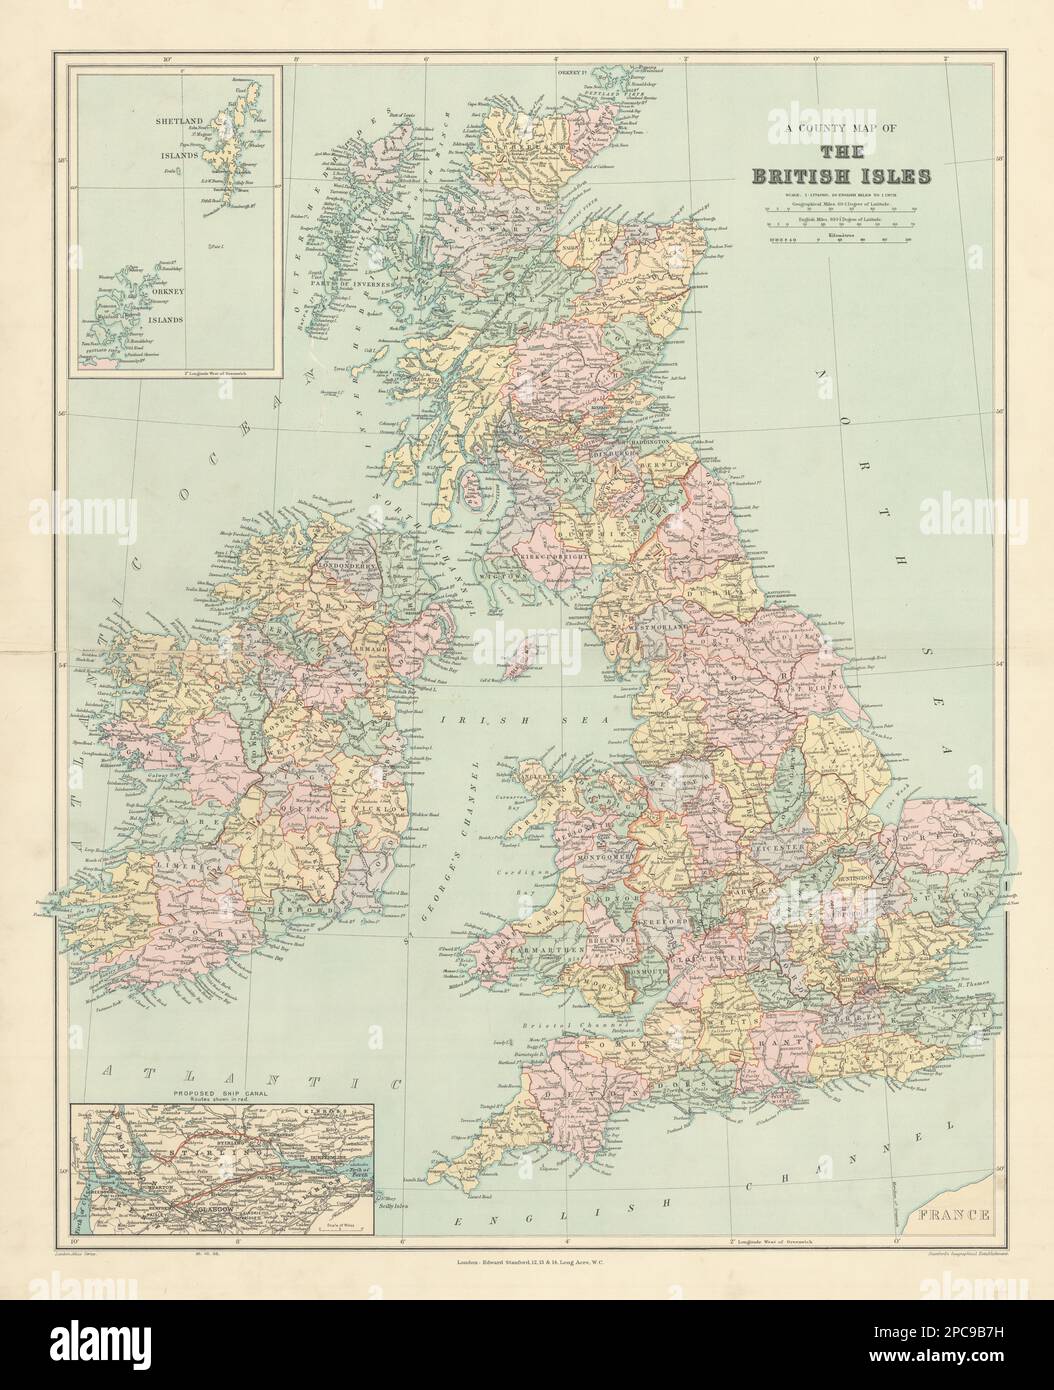 County carte des îles britanniques. Angleterre Ecosse Irlande Pays de Galles. 1904 STANFORD Banque D'Images